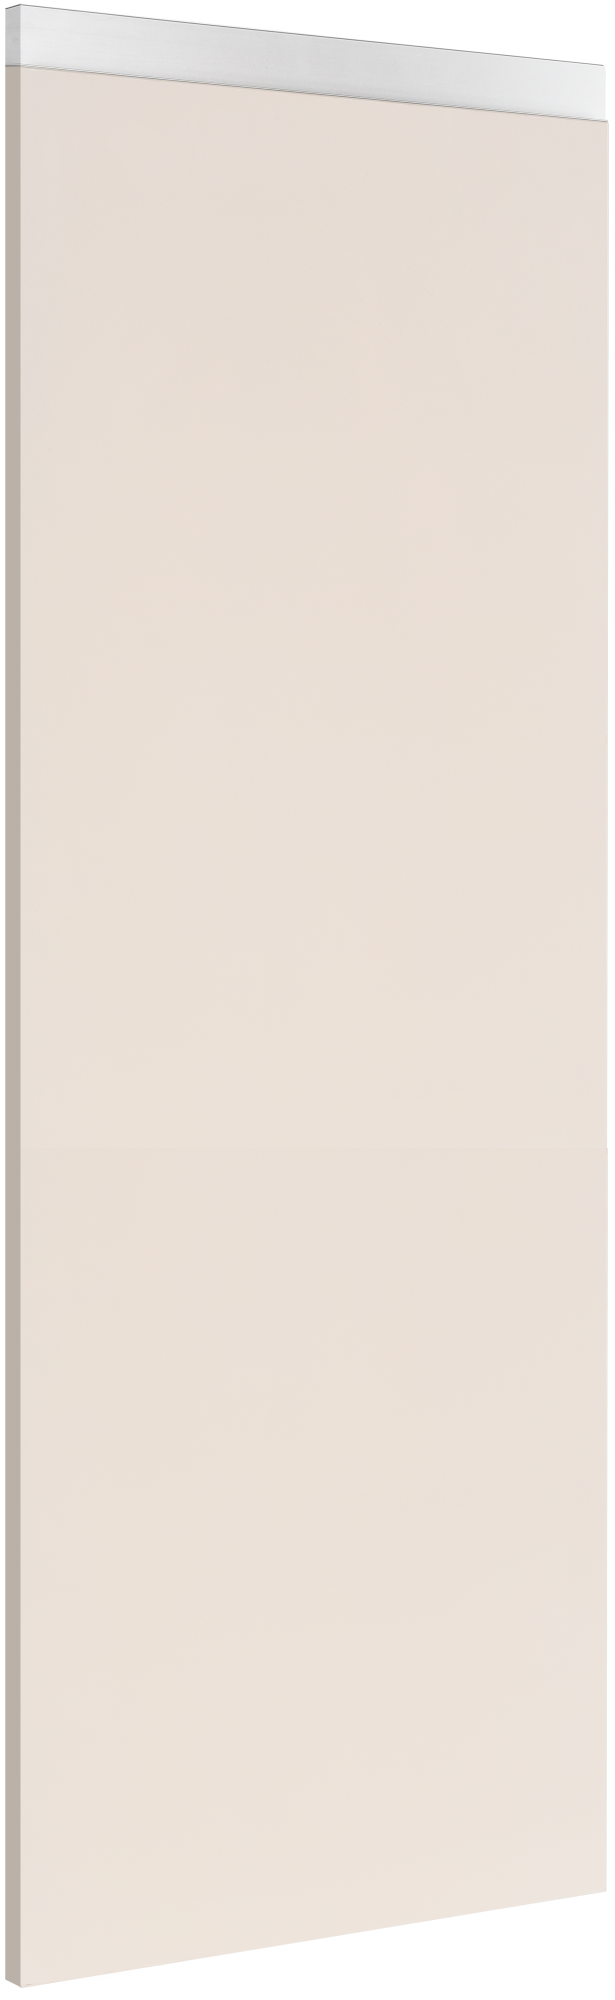 Costado delinia id mikonos marrón 60x137,6 cm